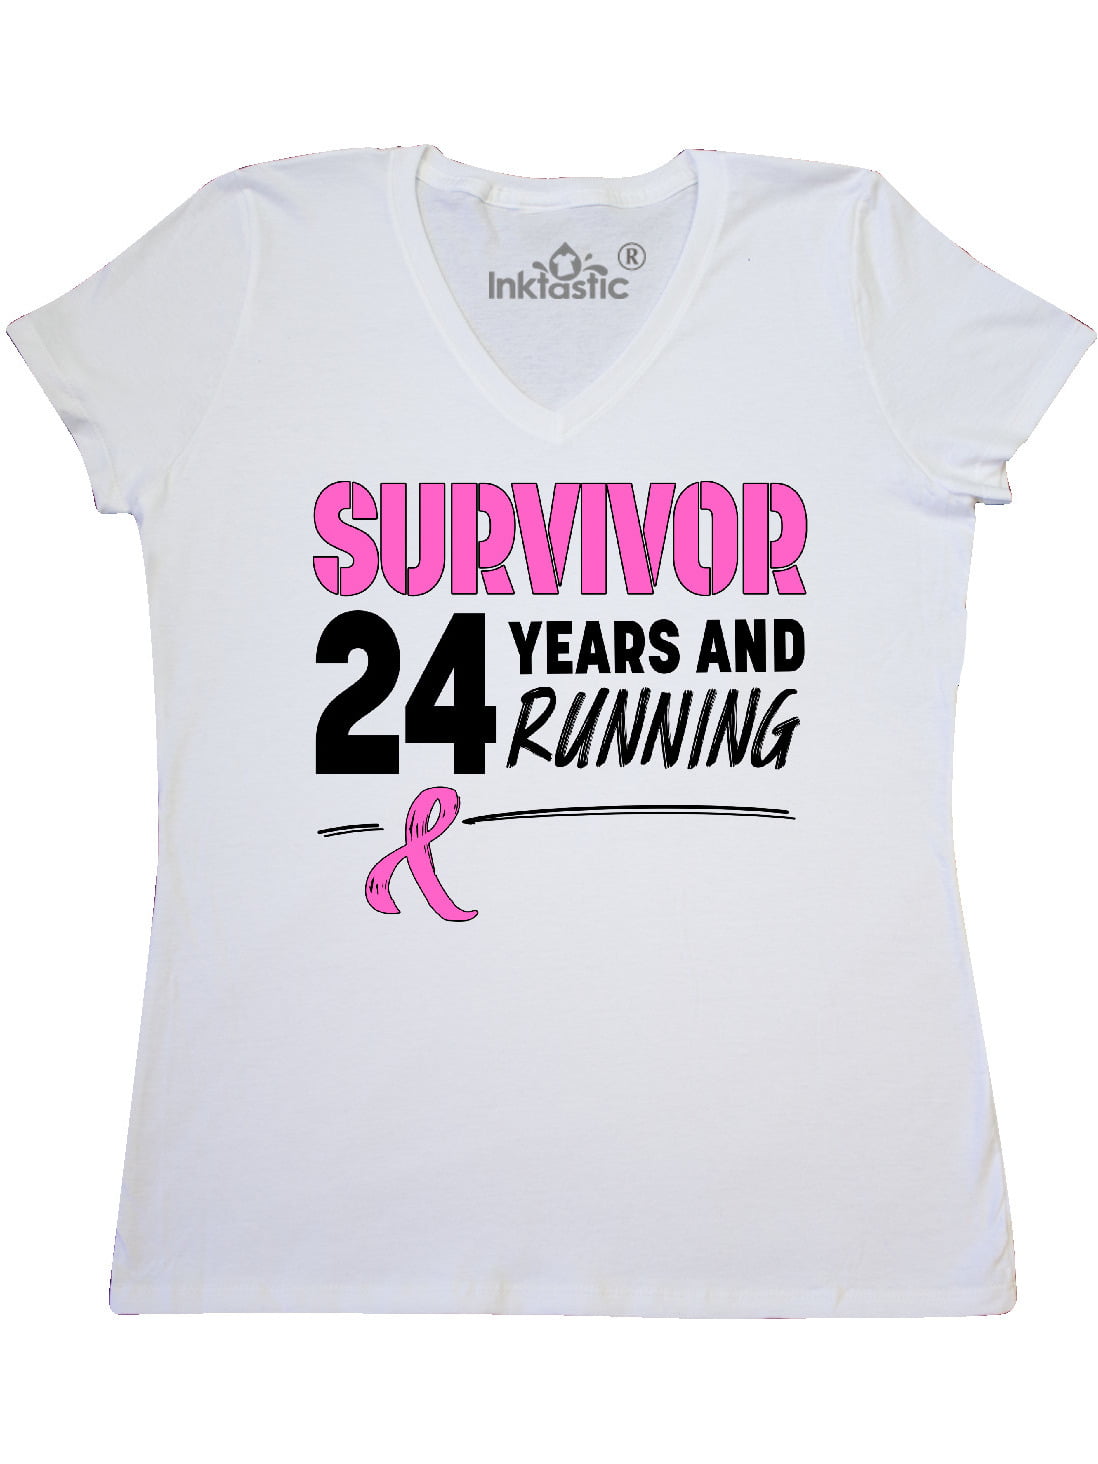 Haine cancer Wear Pink Pour la vie de charité Top Tee-Shirt Femme Coupe Unisexe Course Run 2018 